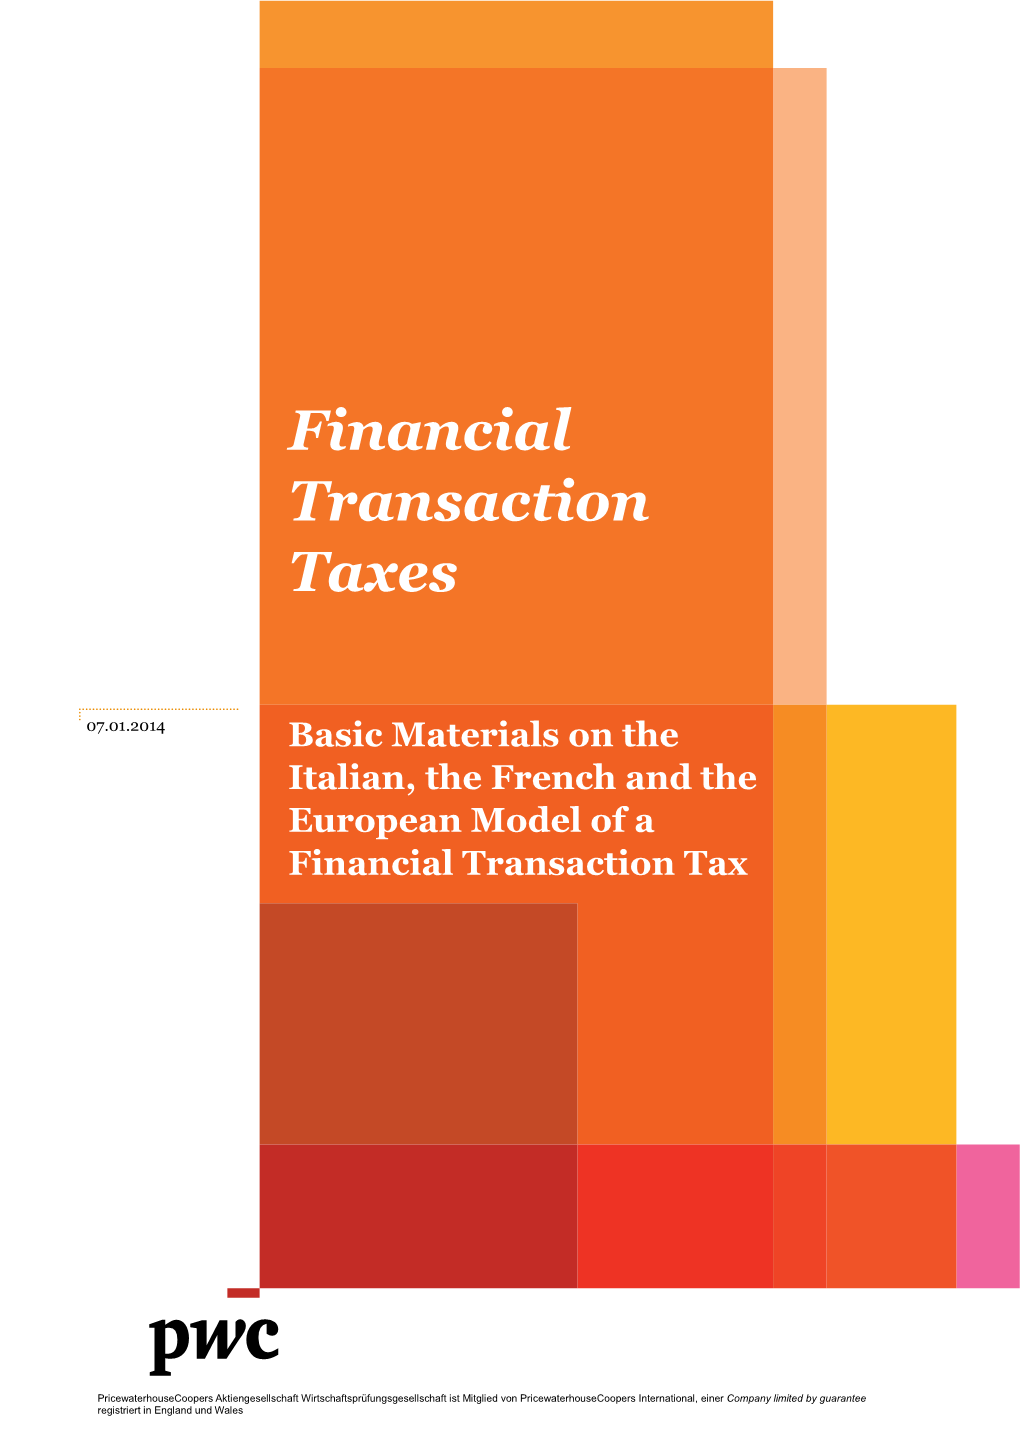 Financial Transaction Taxes